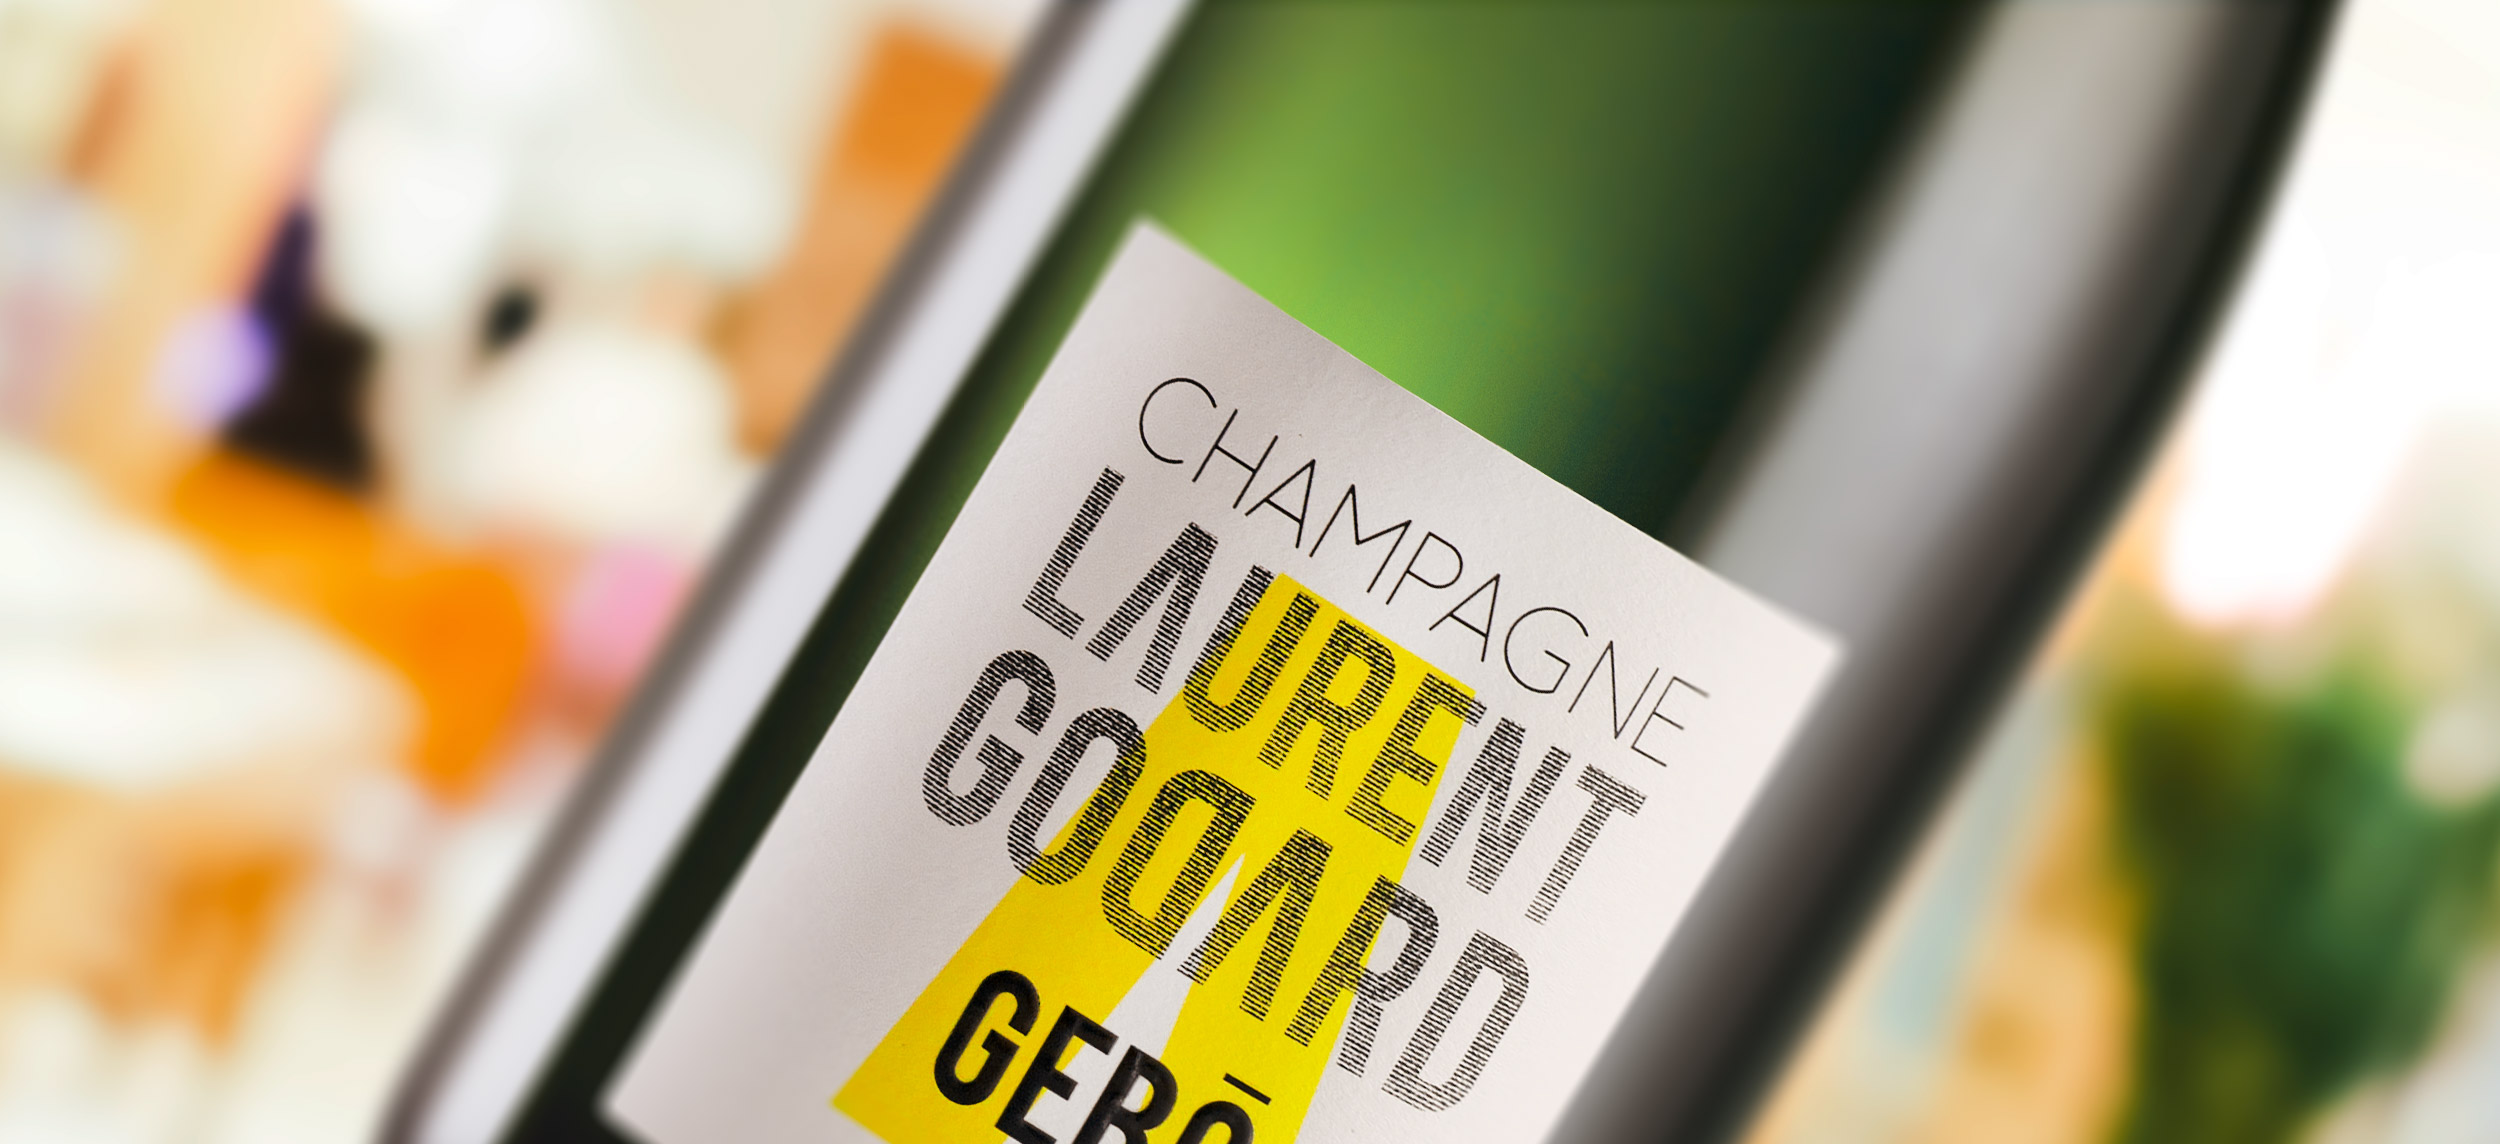 Photo de la bouteille de Champagne Gebo du Champagne Laurent Godard